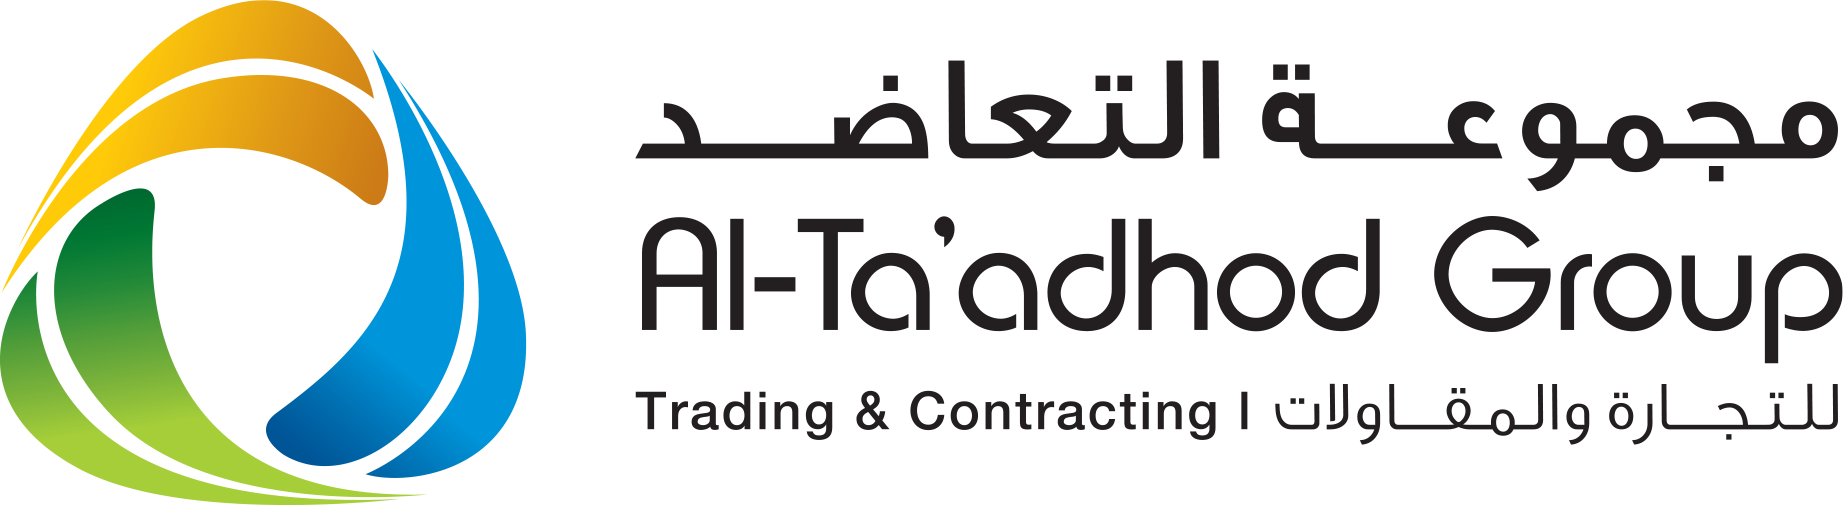 Al-Taadhod Group